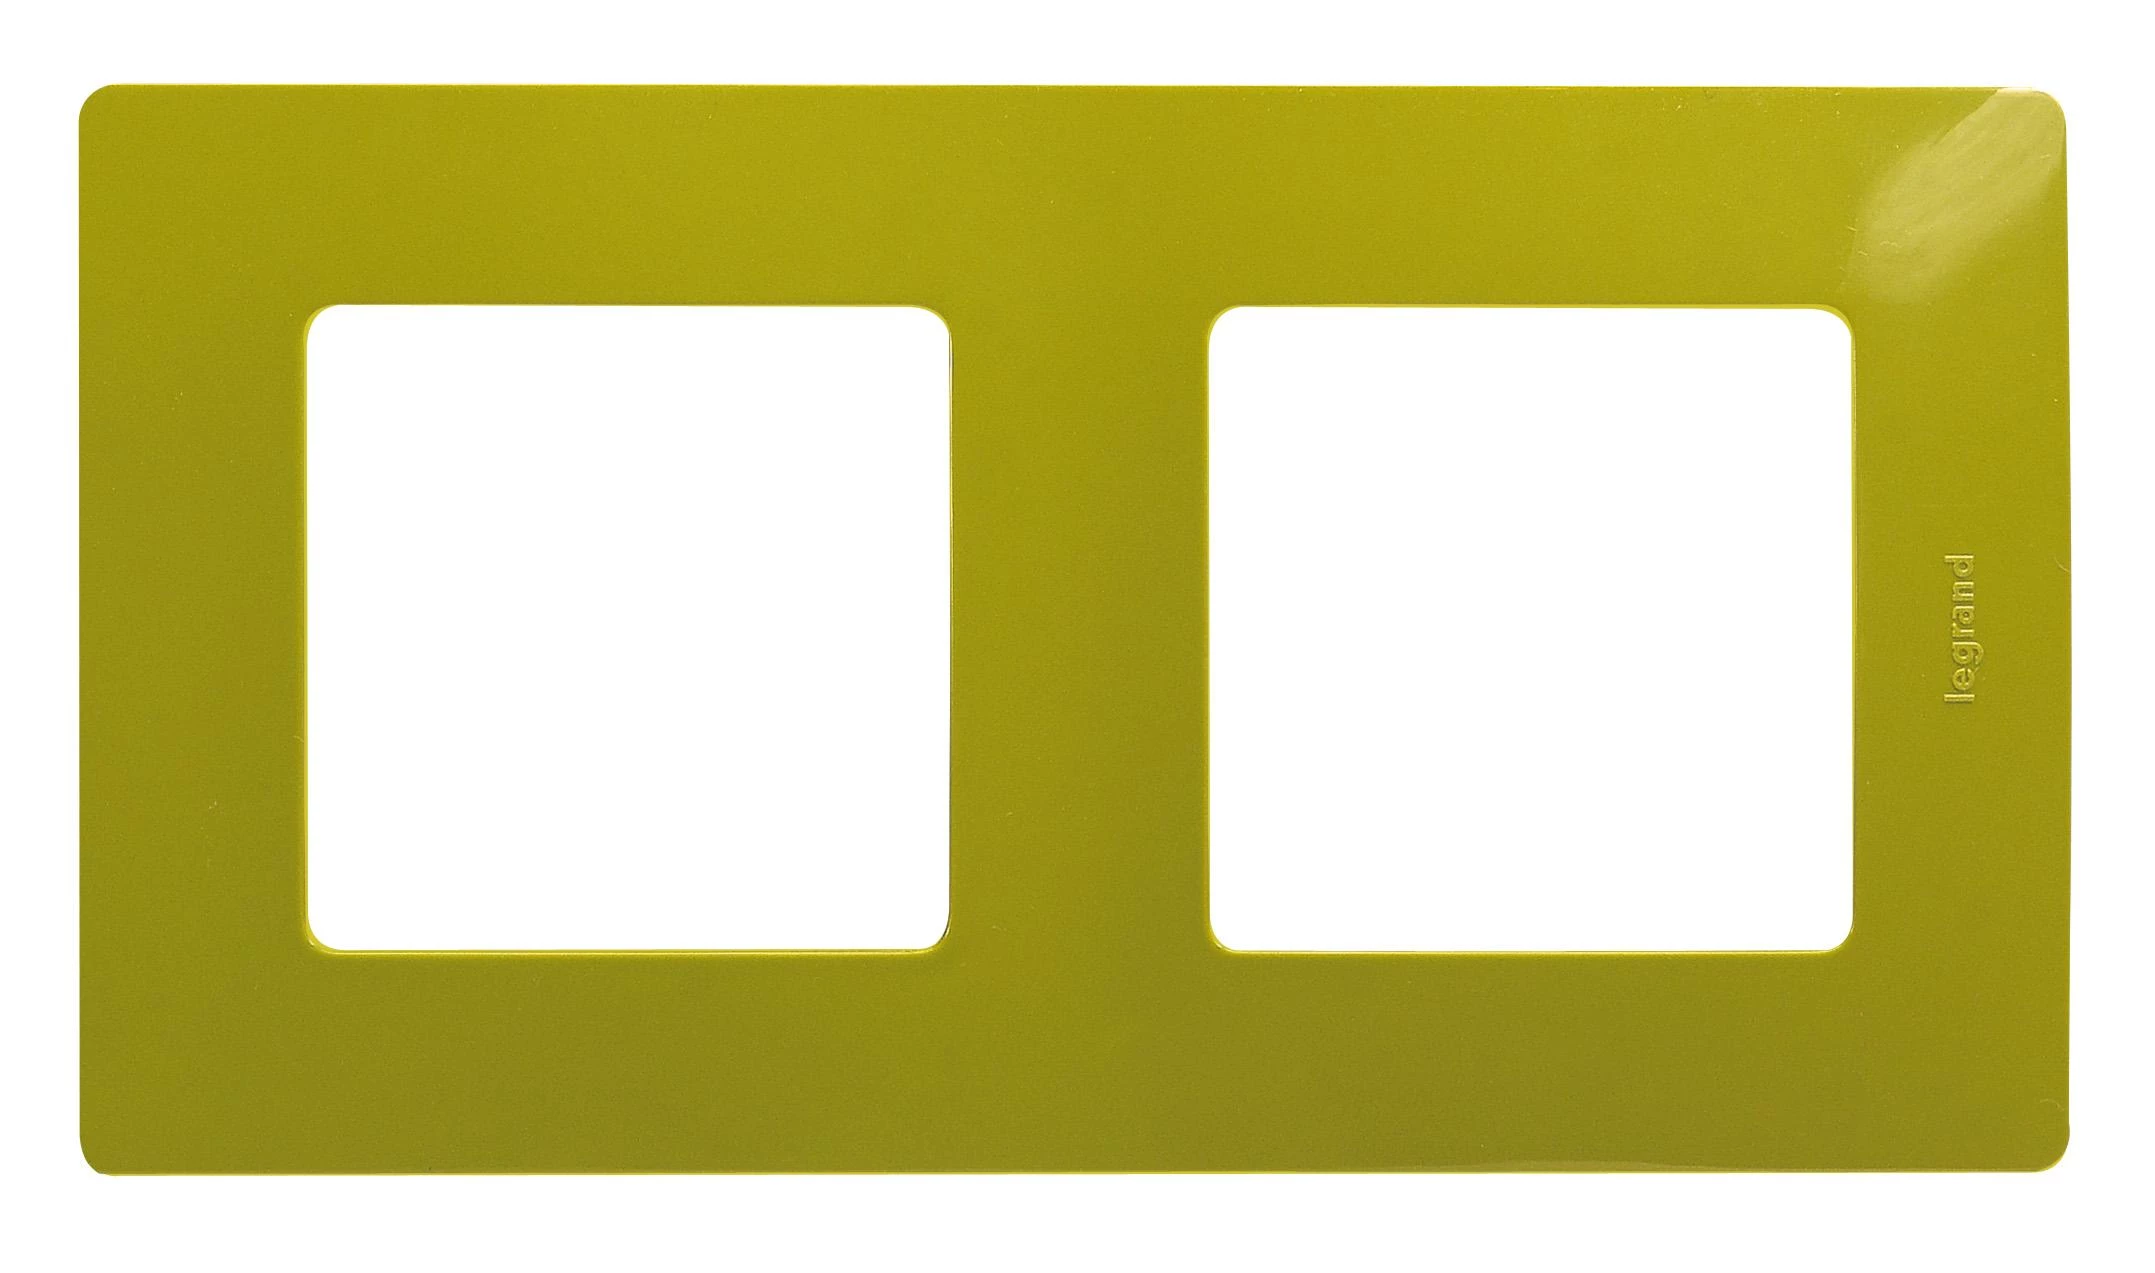  артикул 672542 название Рамка 2-ая (двойная), цвет Зеленый папоротник, Etika